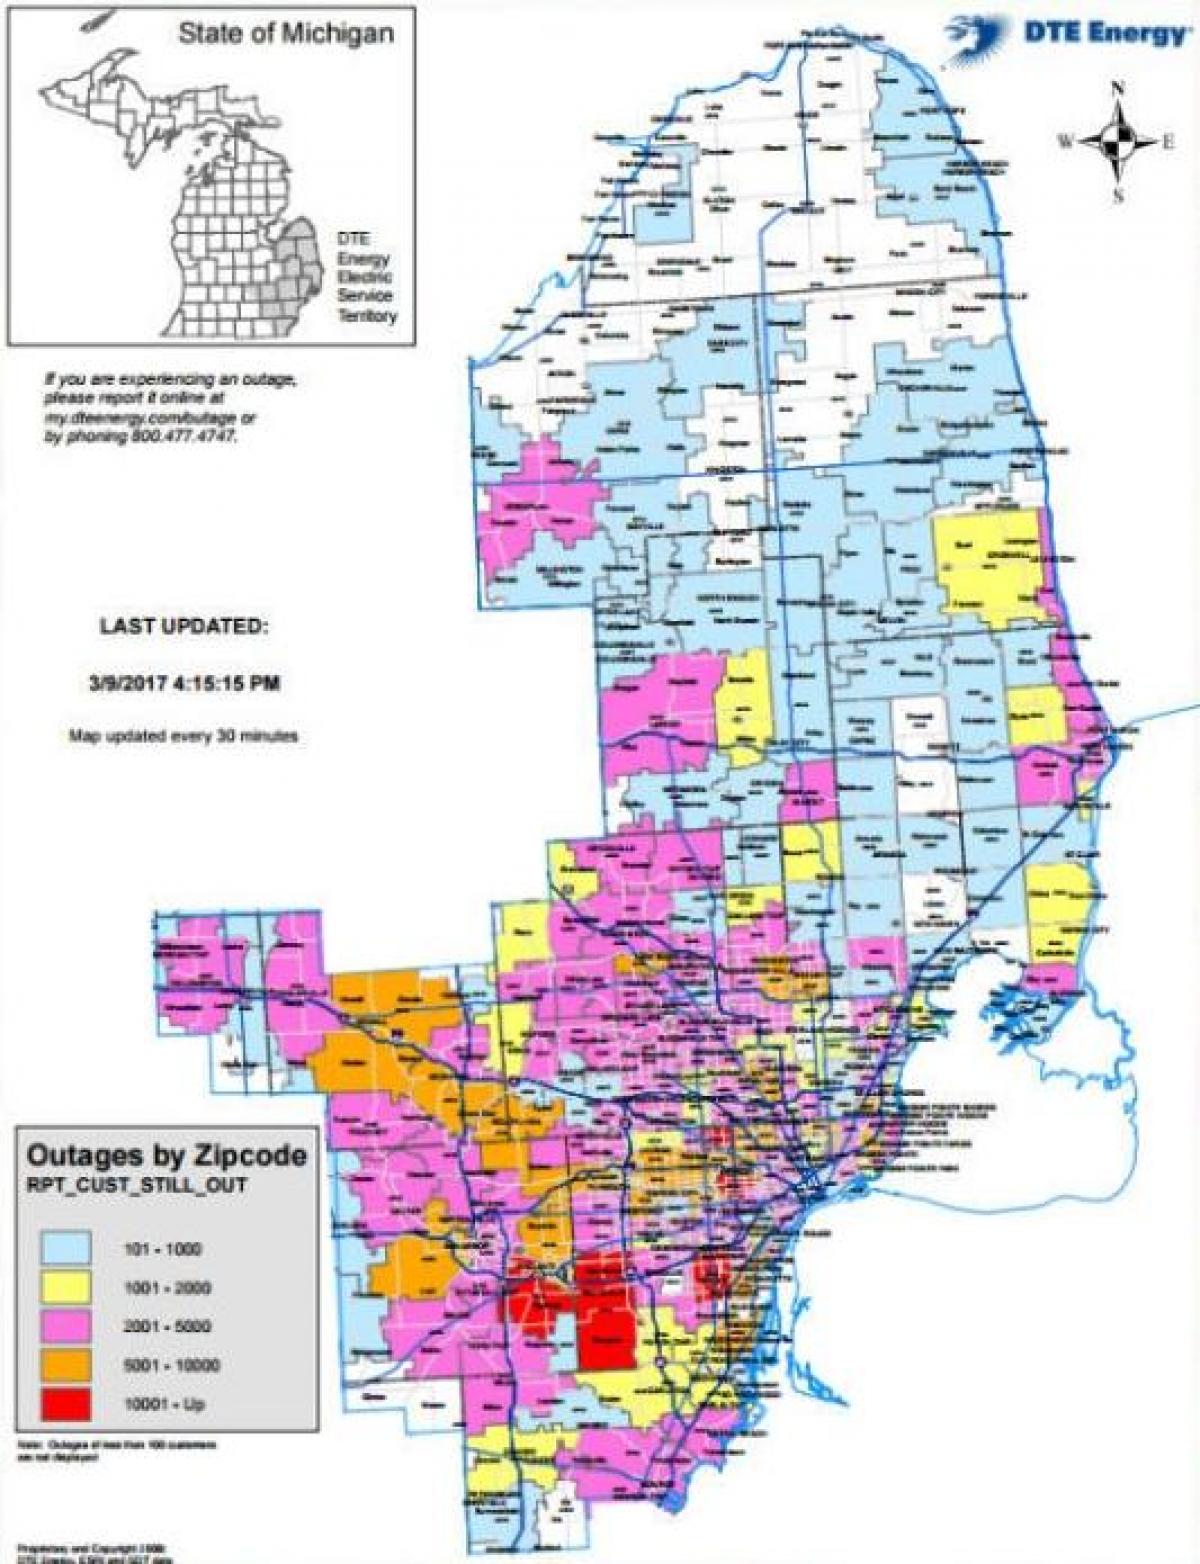 Detroit edison apagón mapa